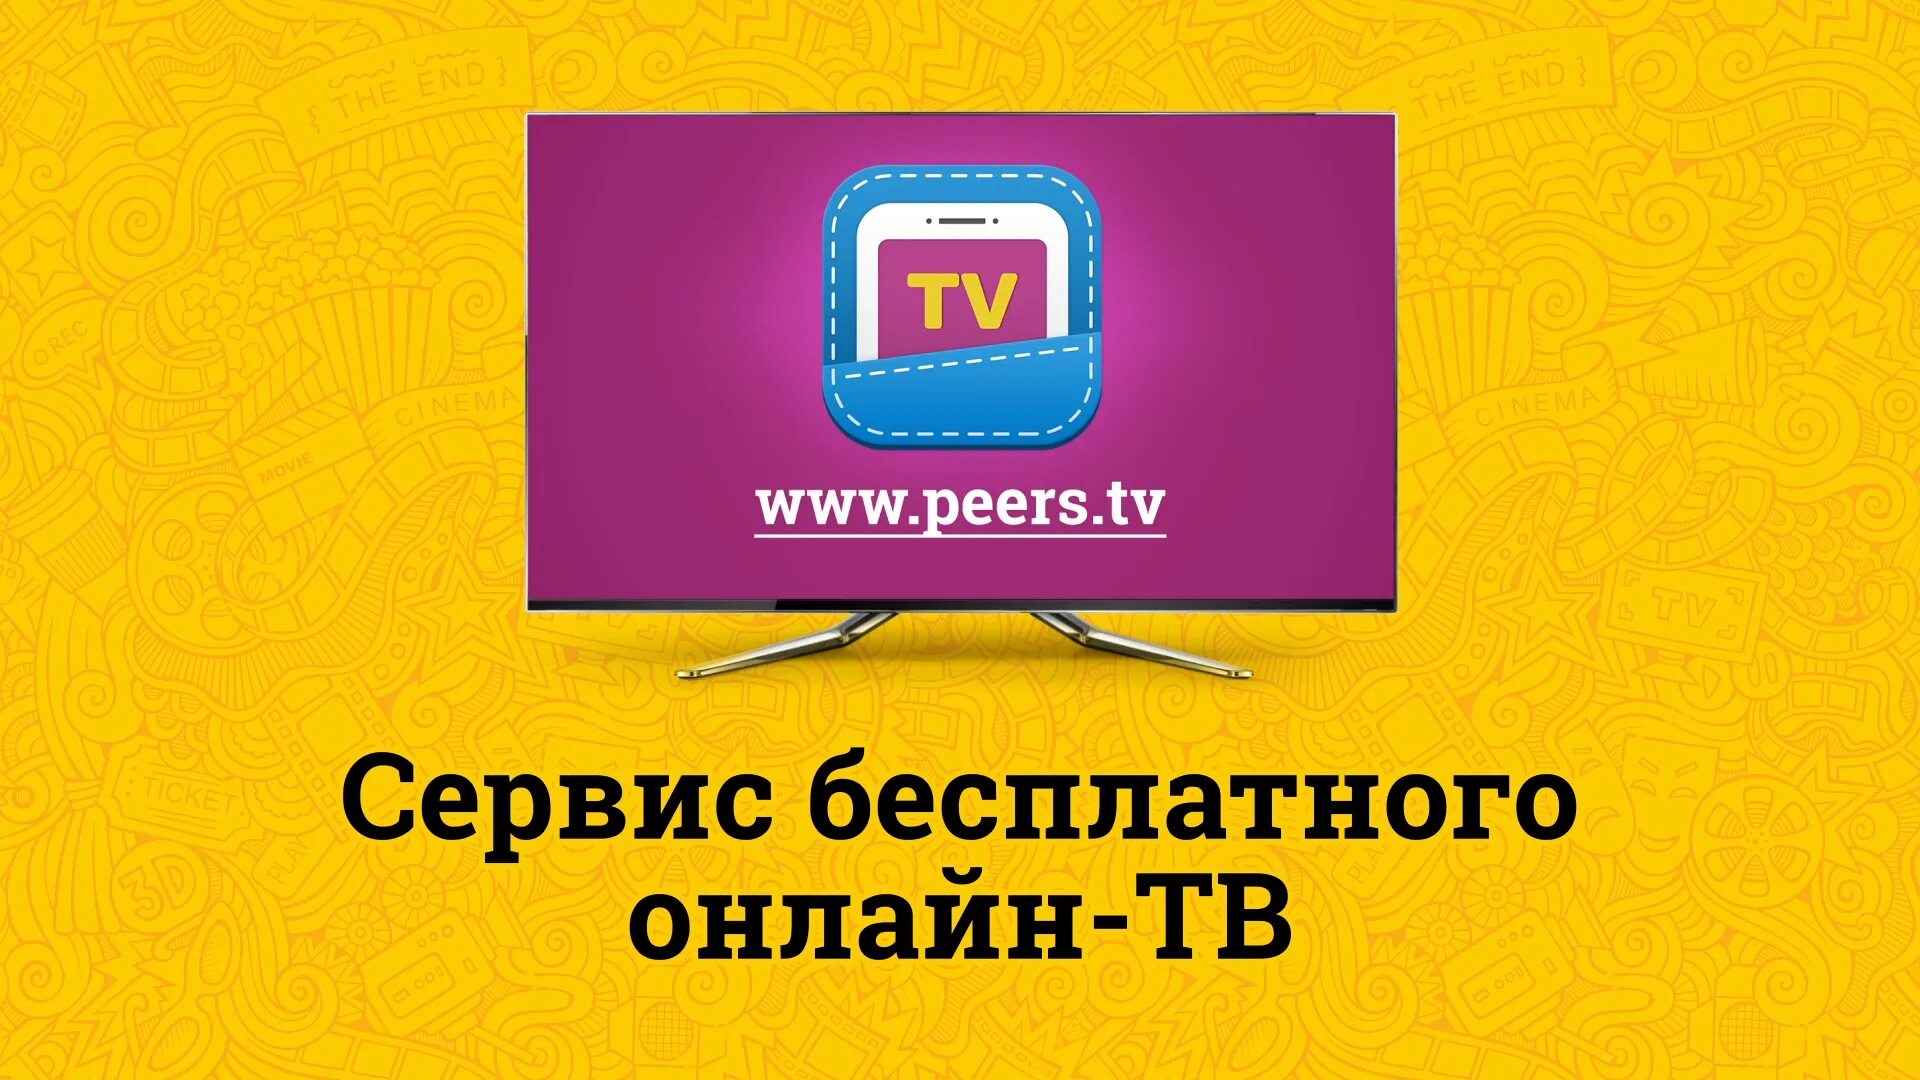 Peers t. Peers TV. Peers TV логотип. Перс ТВ. Пирс ТВ каналы.